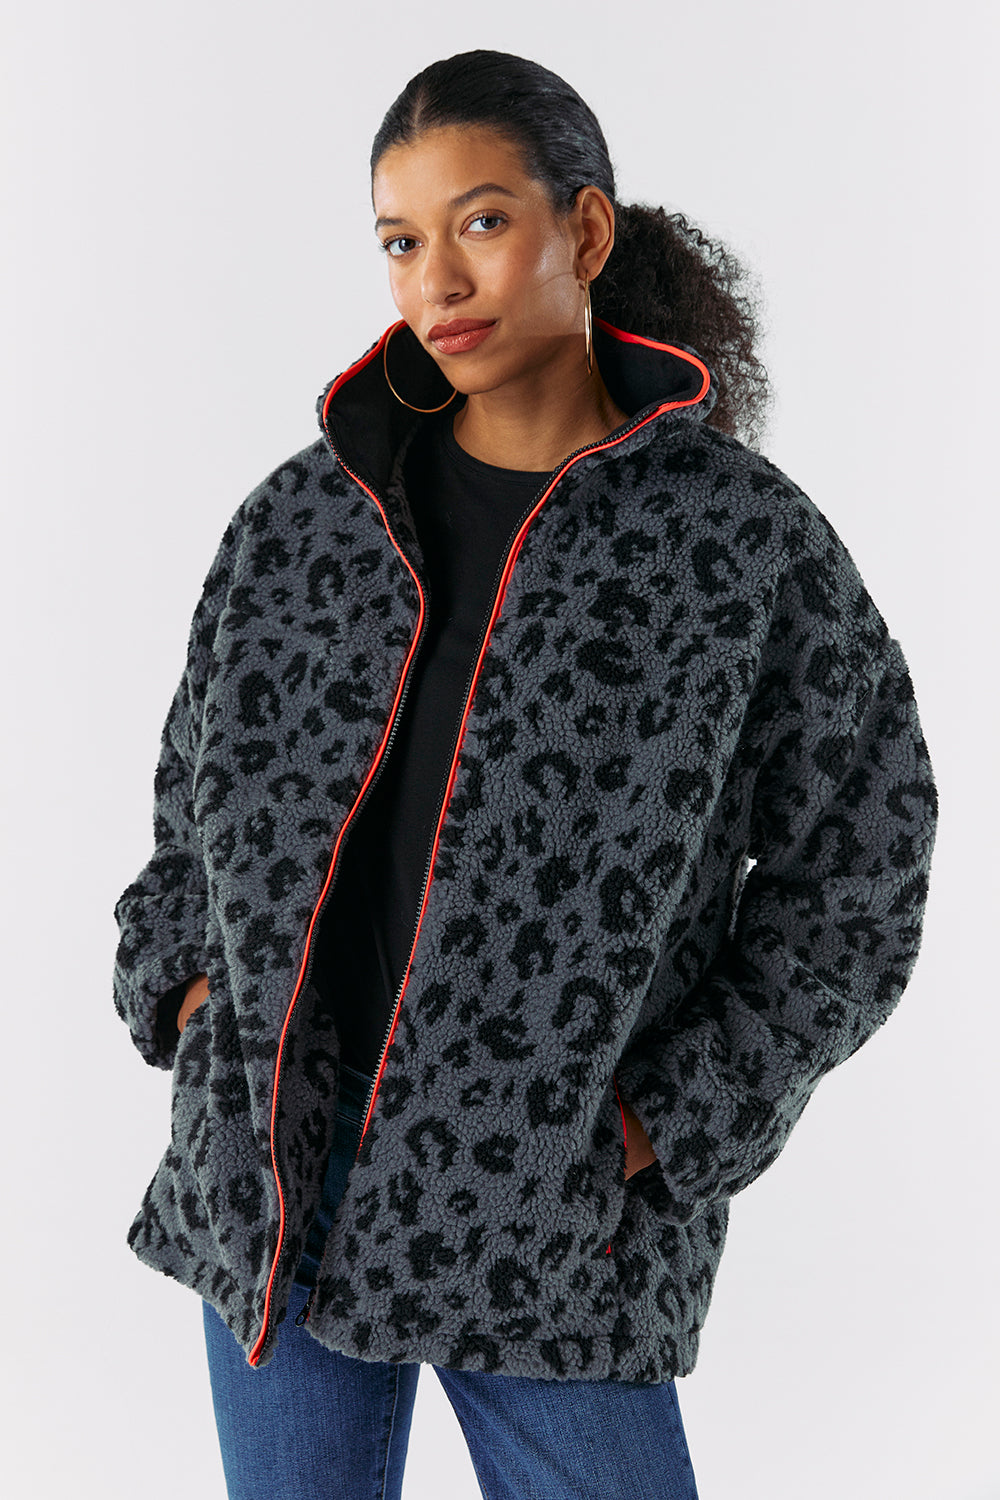 Grey Leopard Printed Fleece Jacket – Scamp & Dude